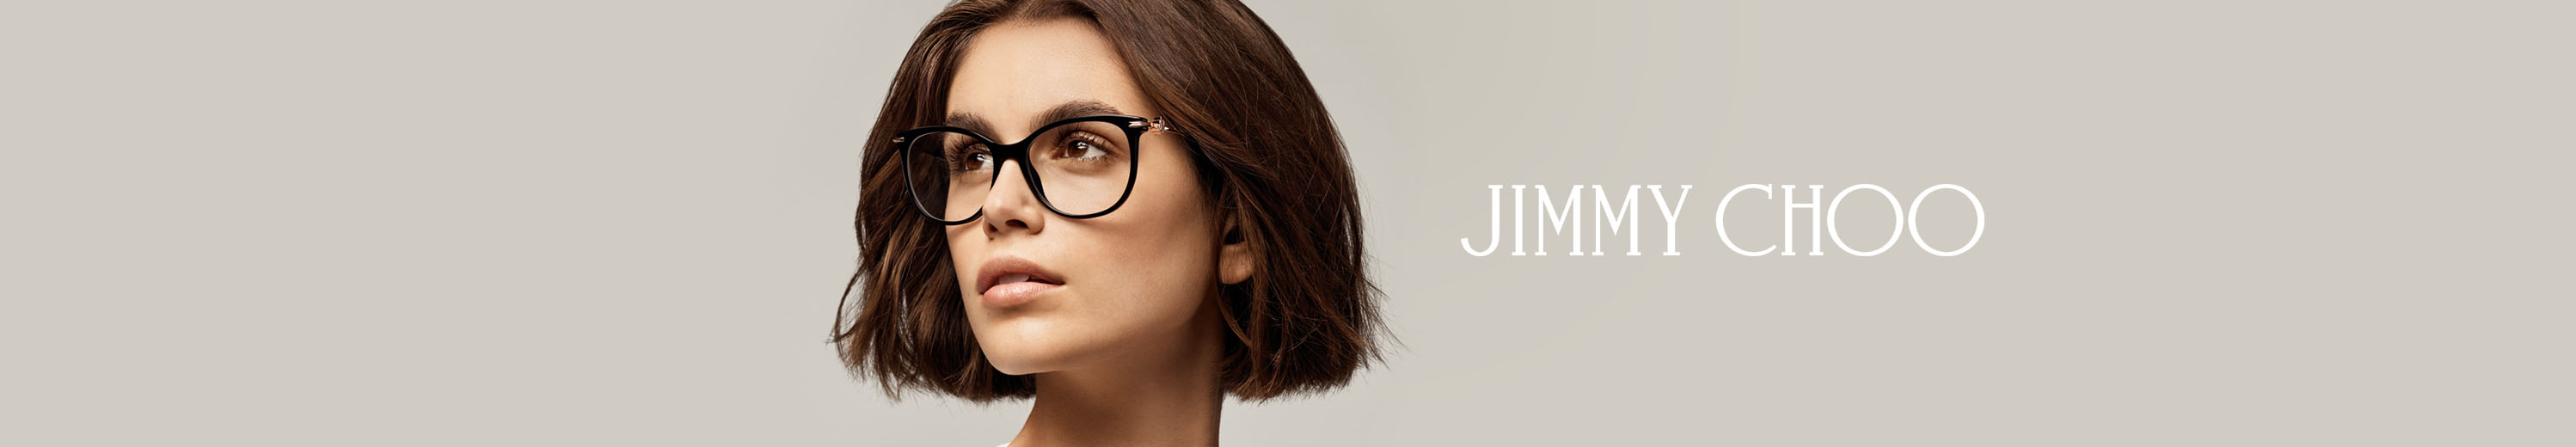 Jimmy Choo Eyeglasses for Women